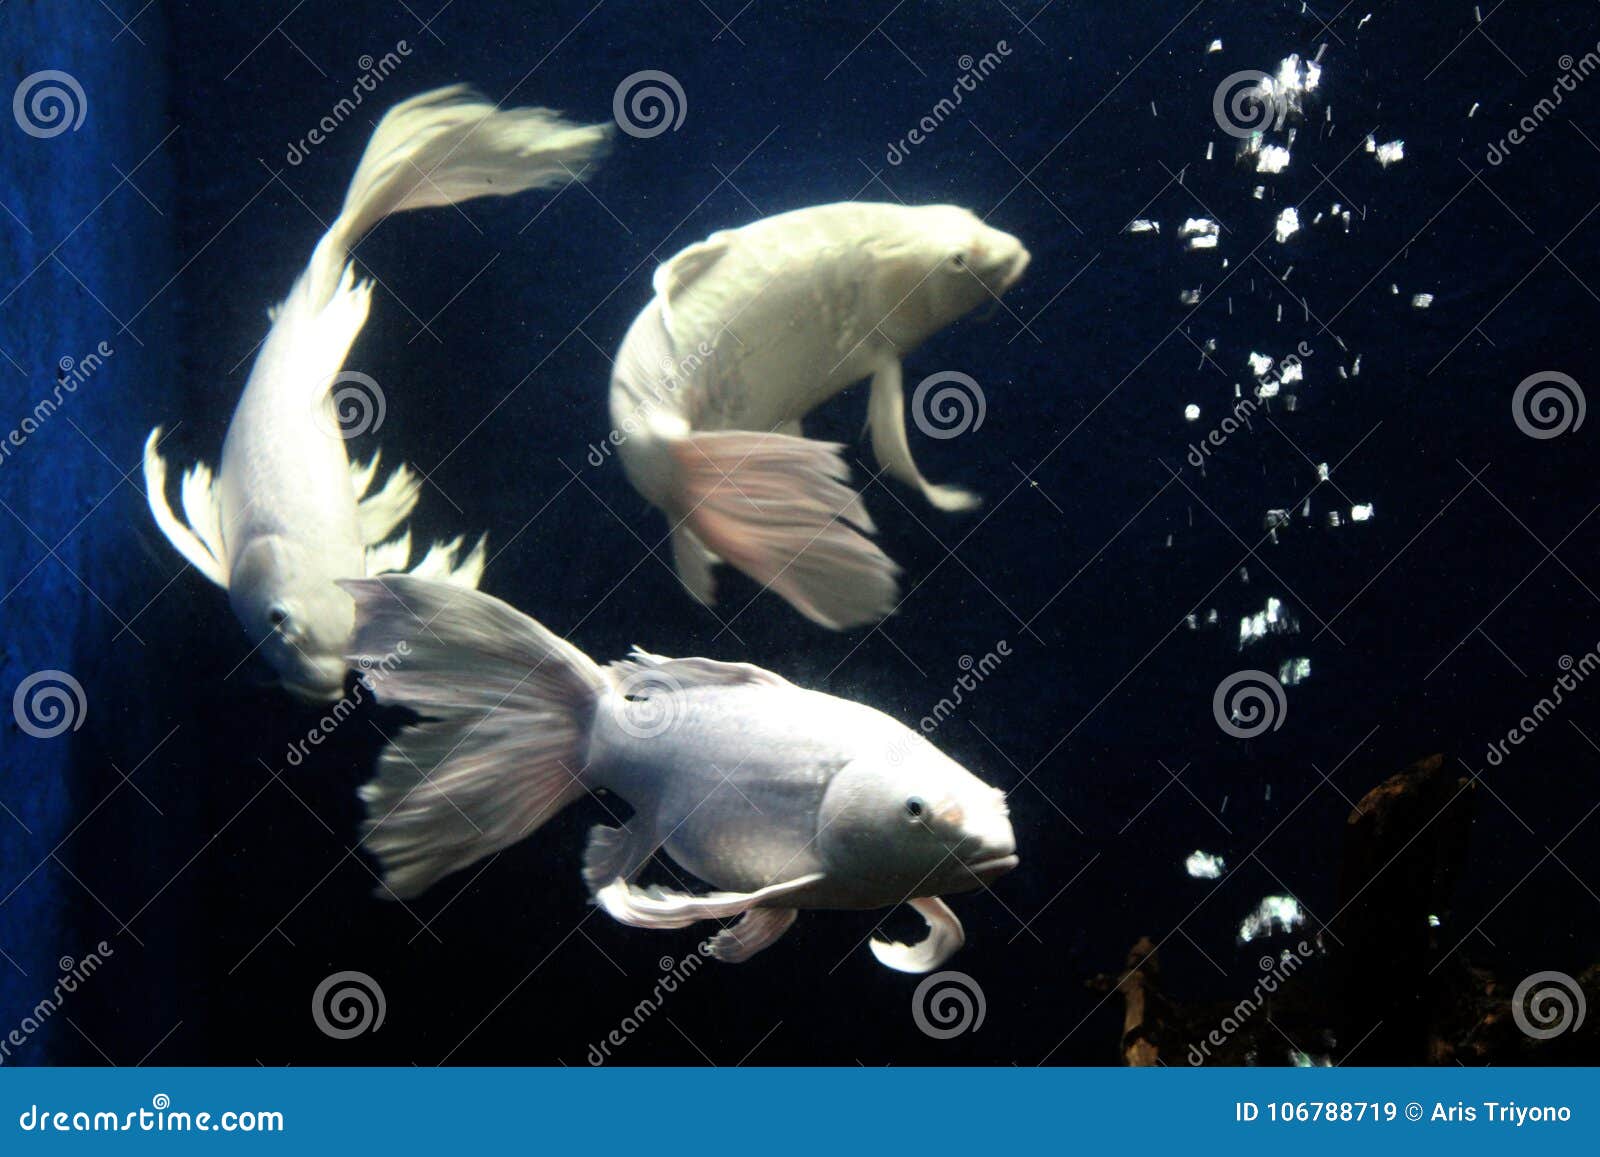 eb terugtrekken Retentie De Siervissen Snakken De Tropische Vissen Van De Staartvin Van Indonesië  Stock Afbeelding - Image of leven, zwart: 106788719